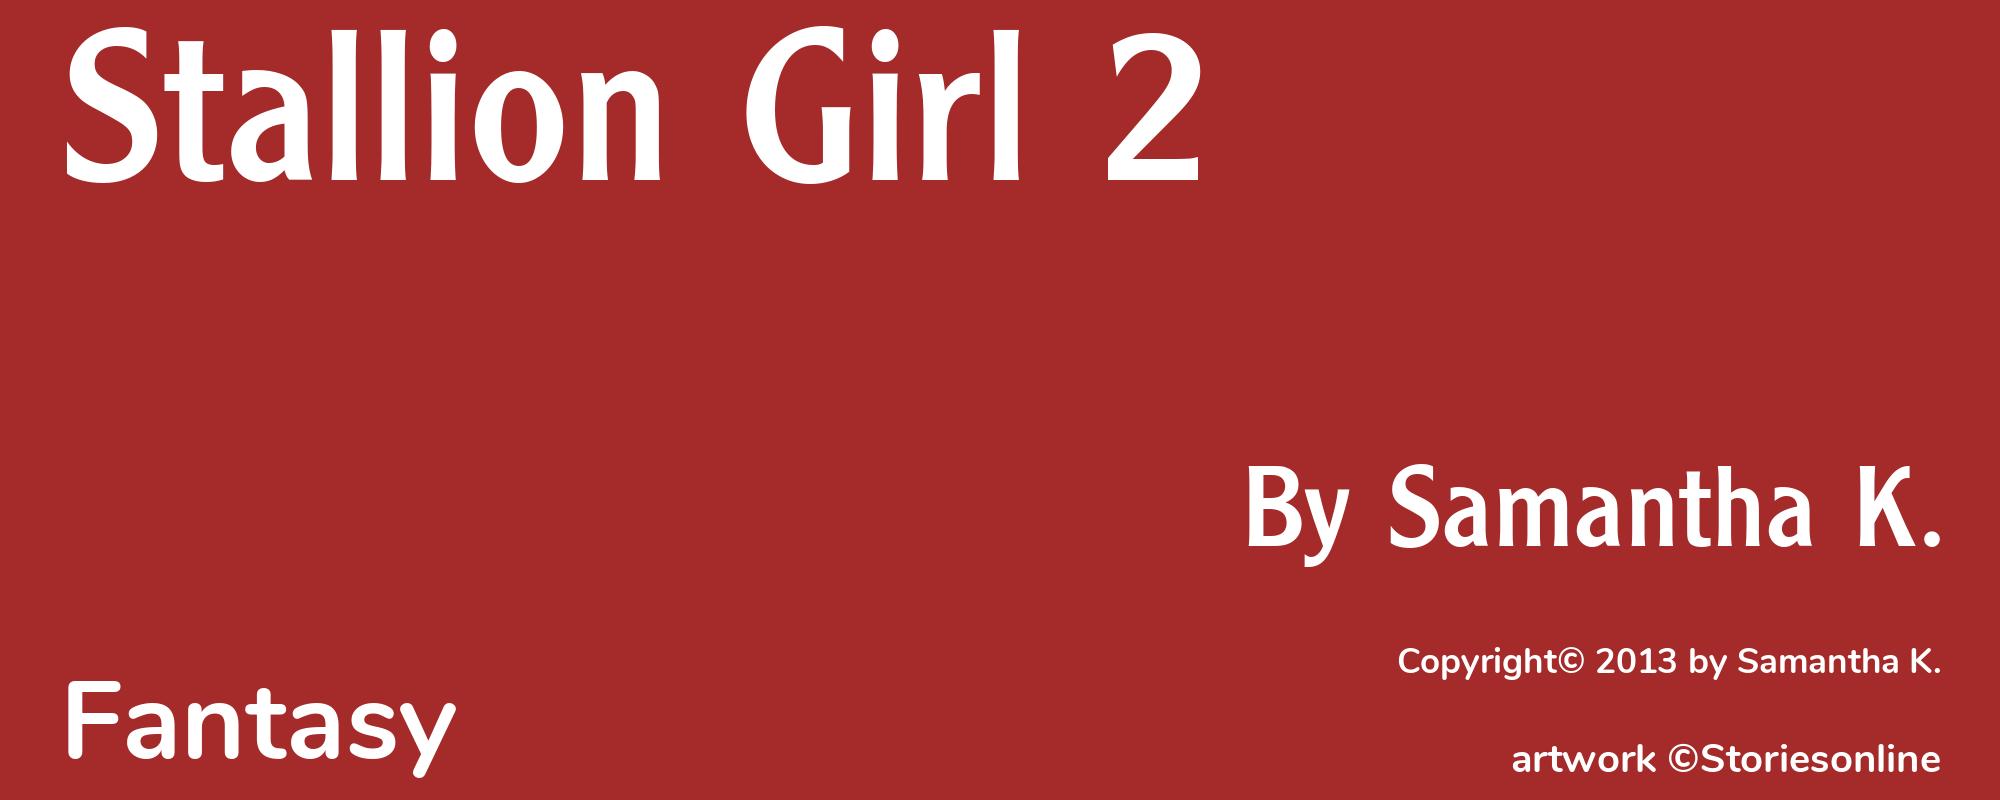 Stallion Girl 2 - Cover